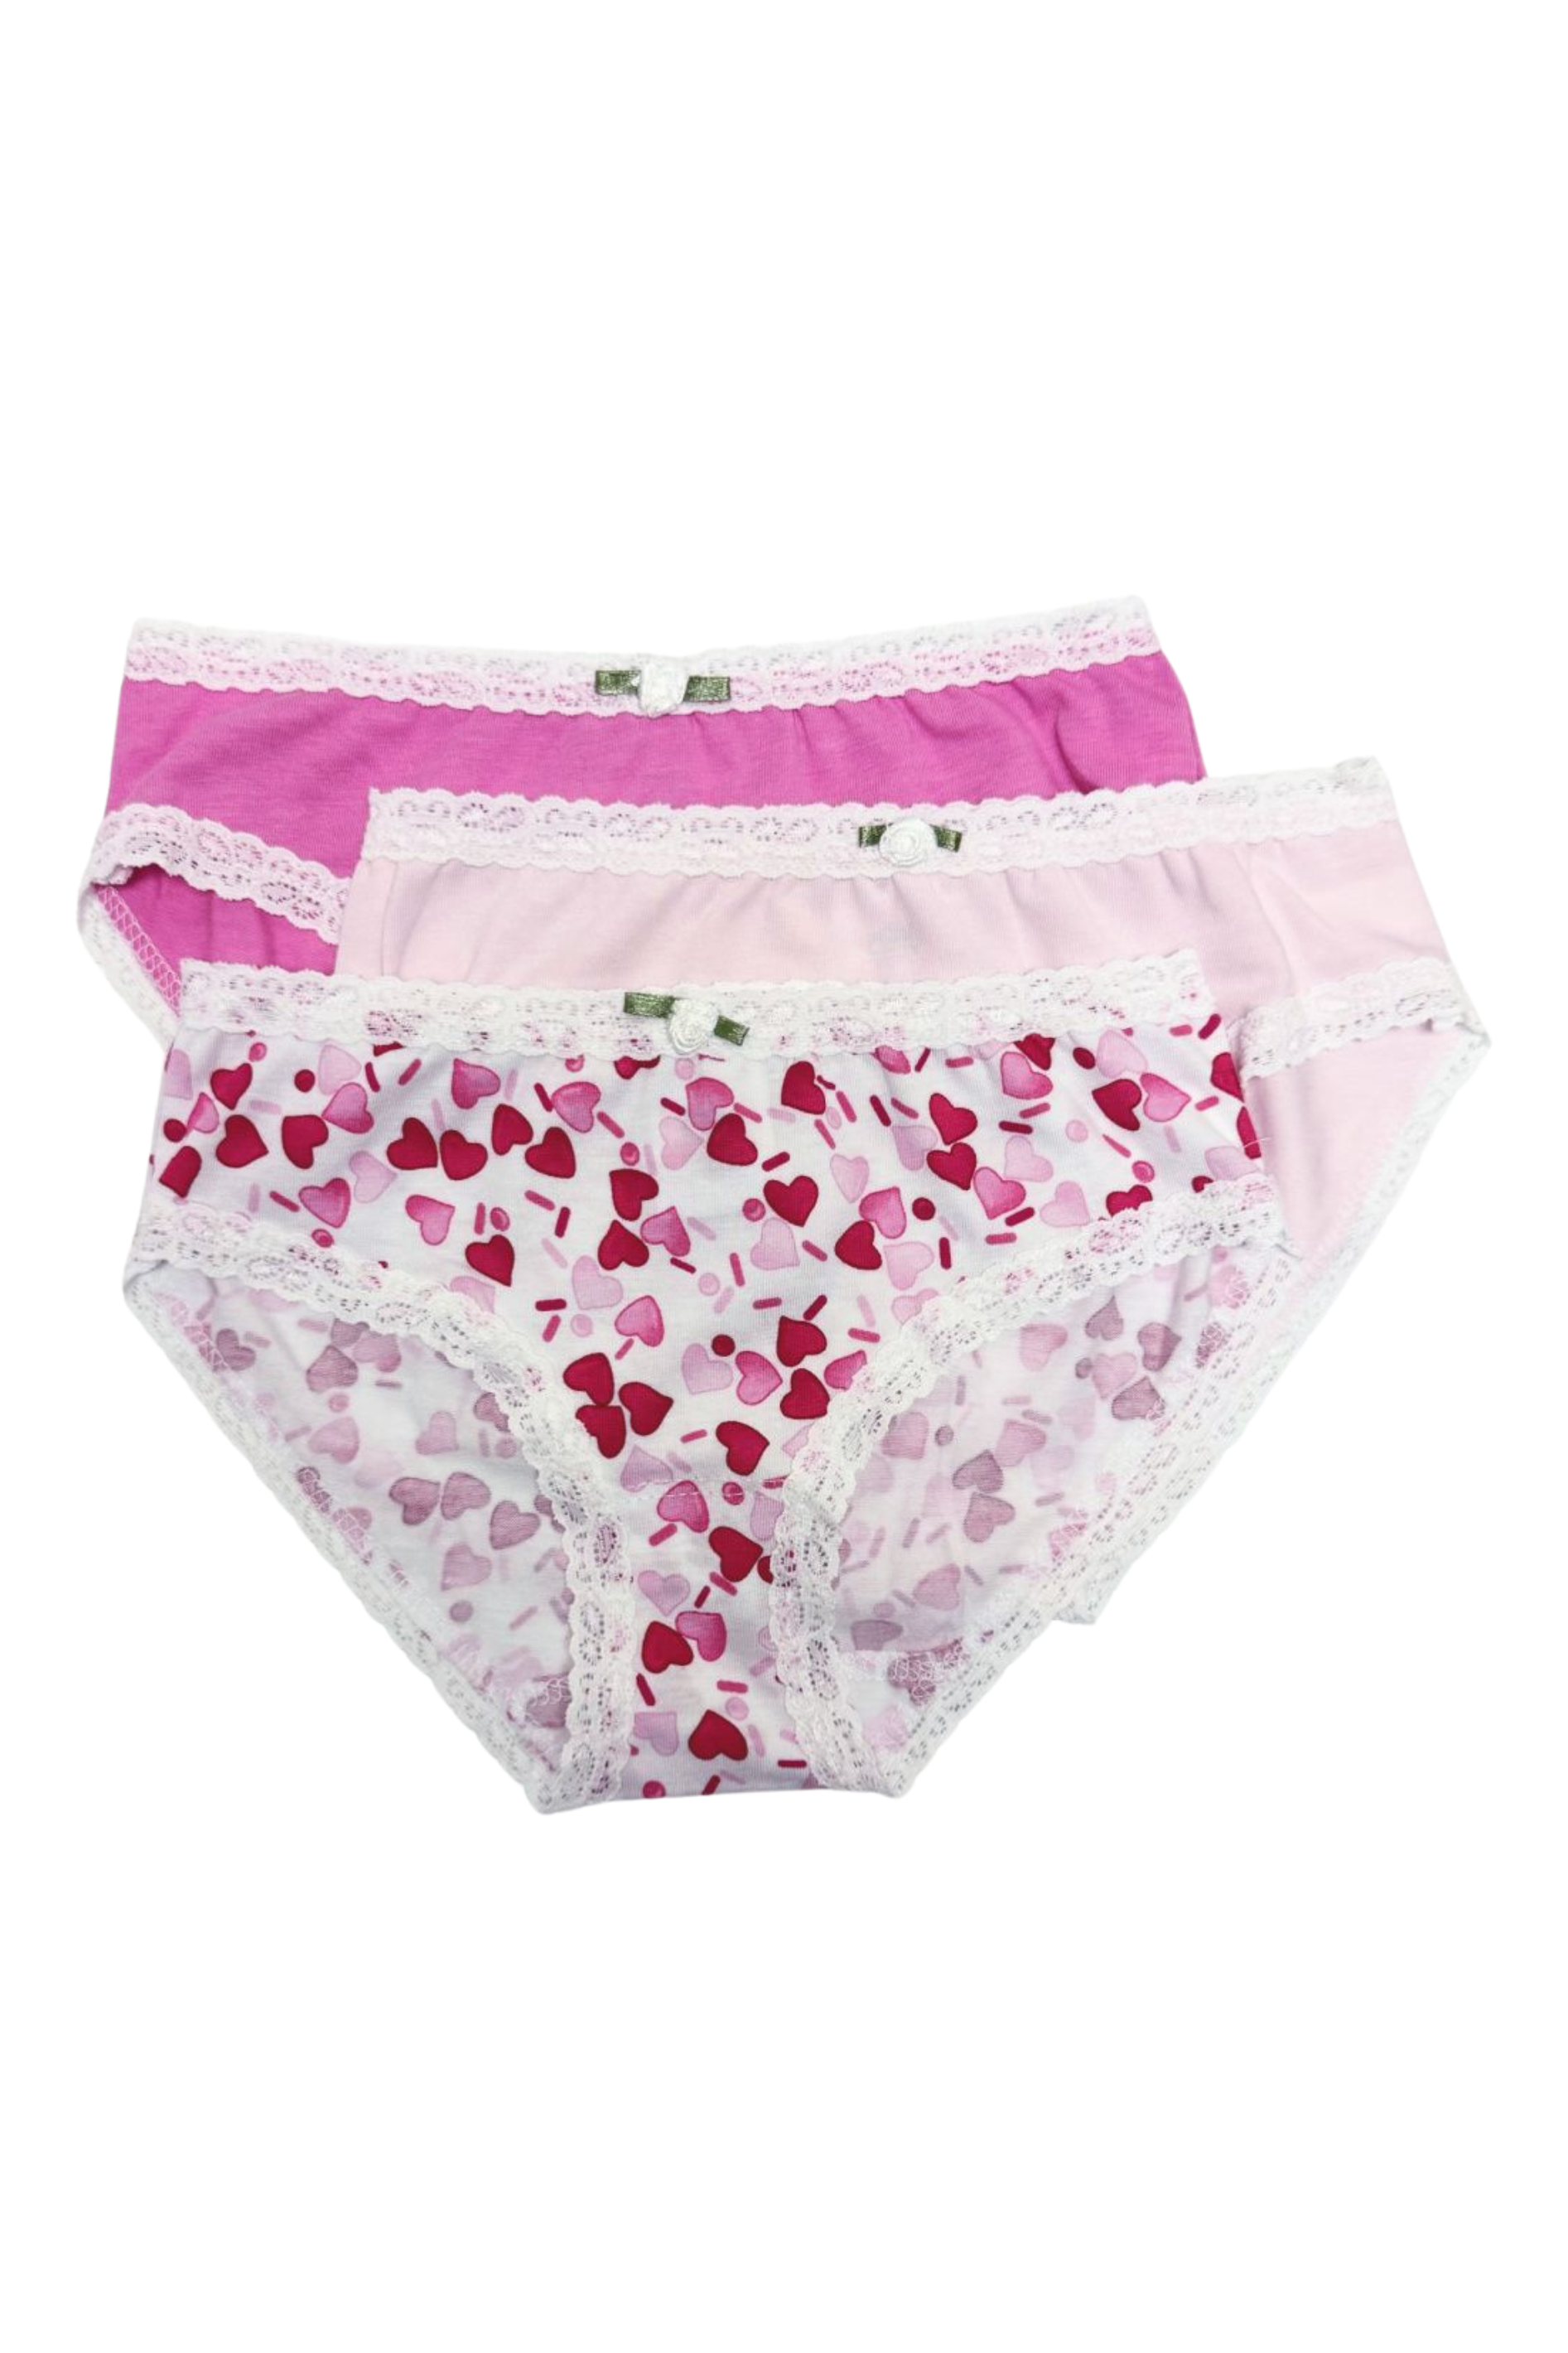 Esme - Heart Sprinkles 3 Panty Pack 7-16 Girls Underwear Big Girls